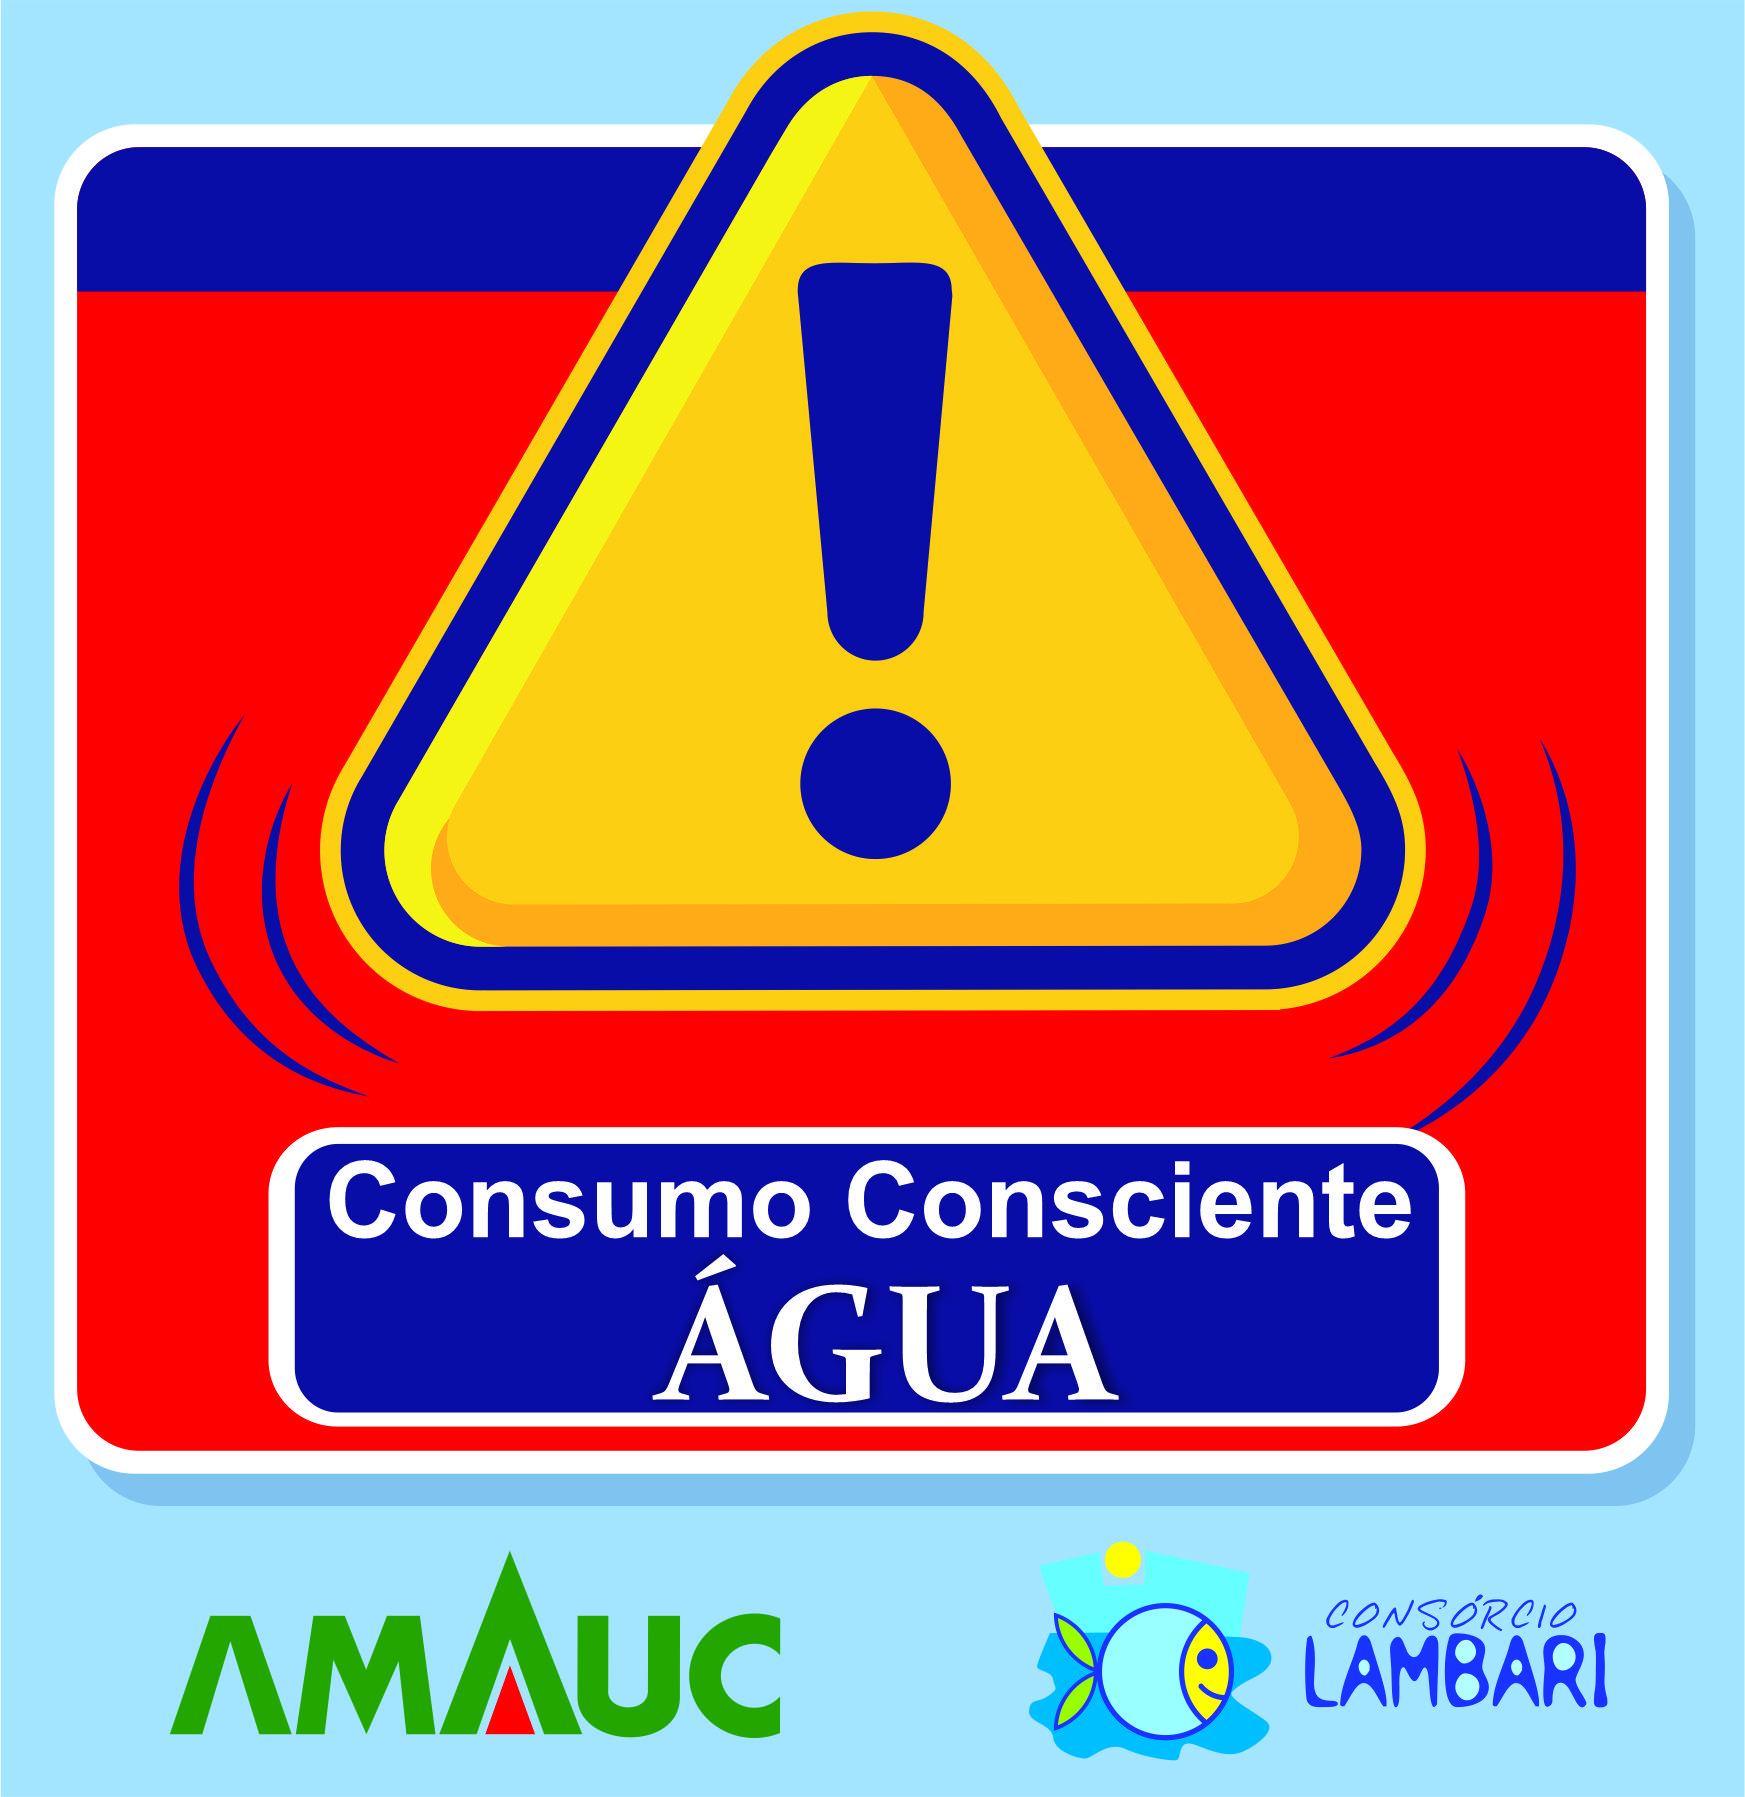 You are currently viewing Municípios da região da AMAUC já estão em alerta devido à falta de chuva em nossa região.